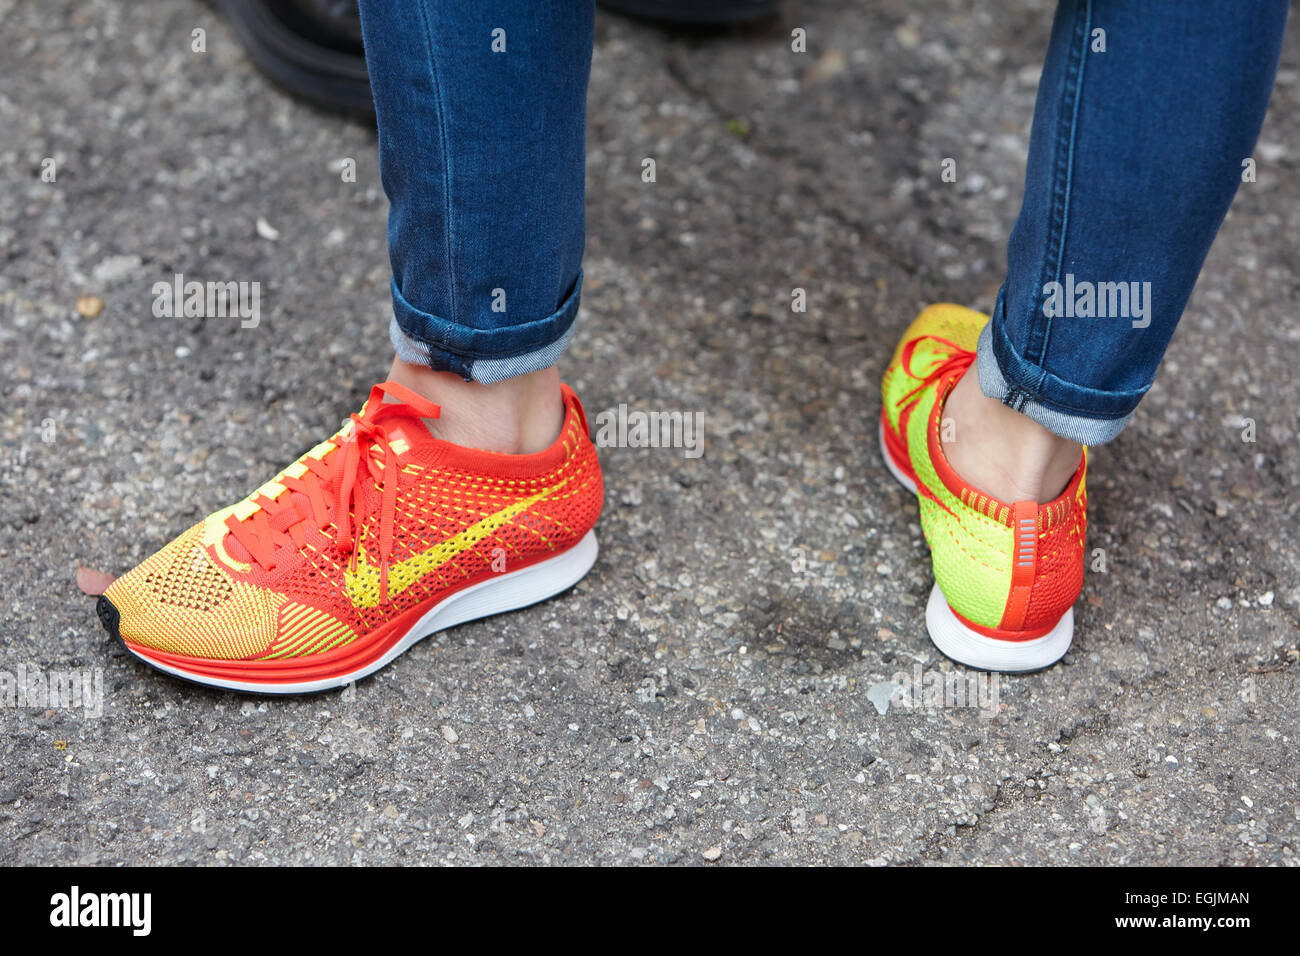 Nike fotografías imágenes de alta resolución Alamy